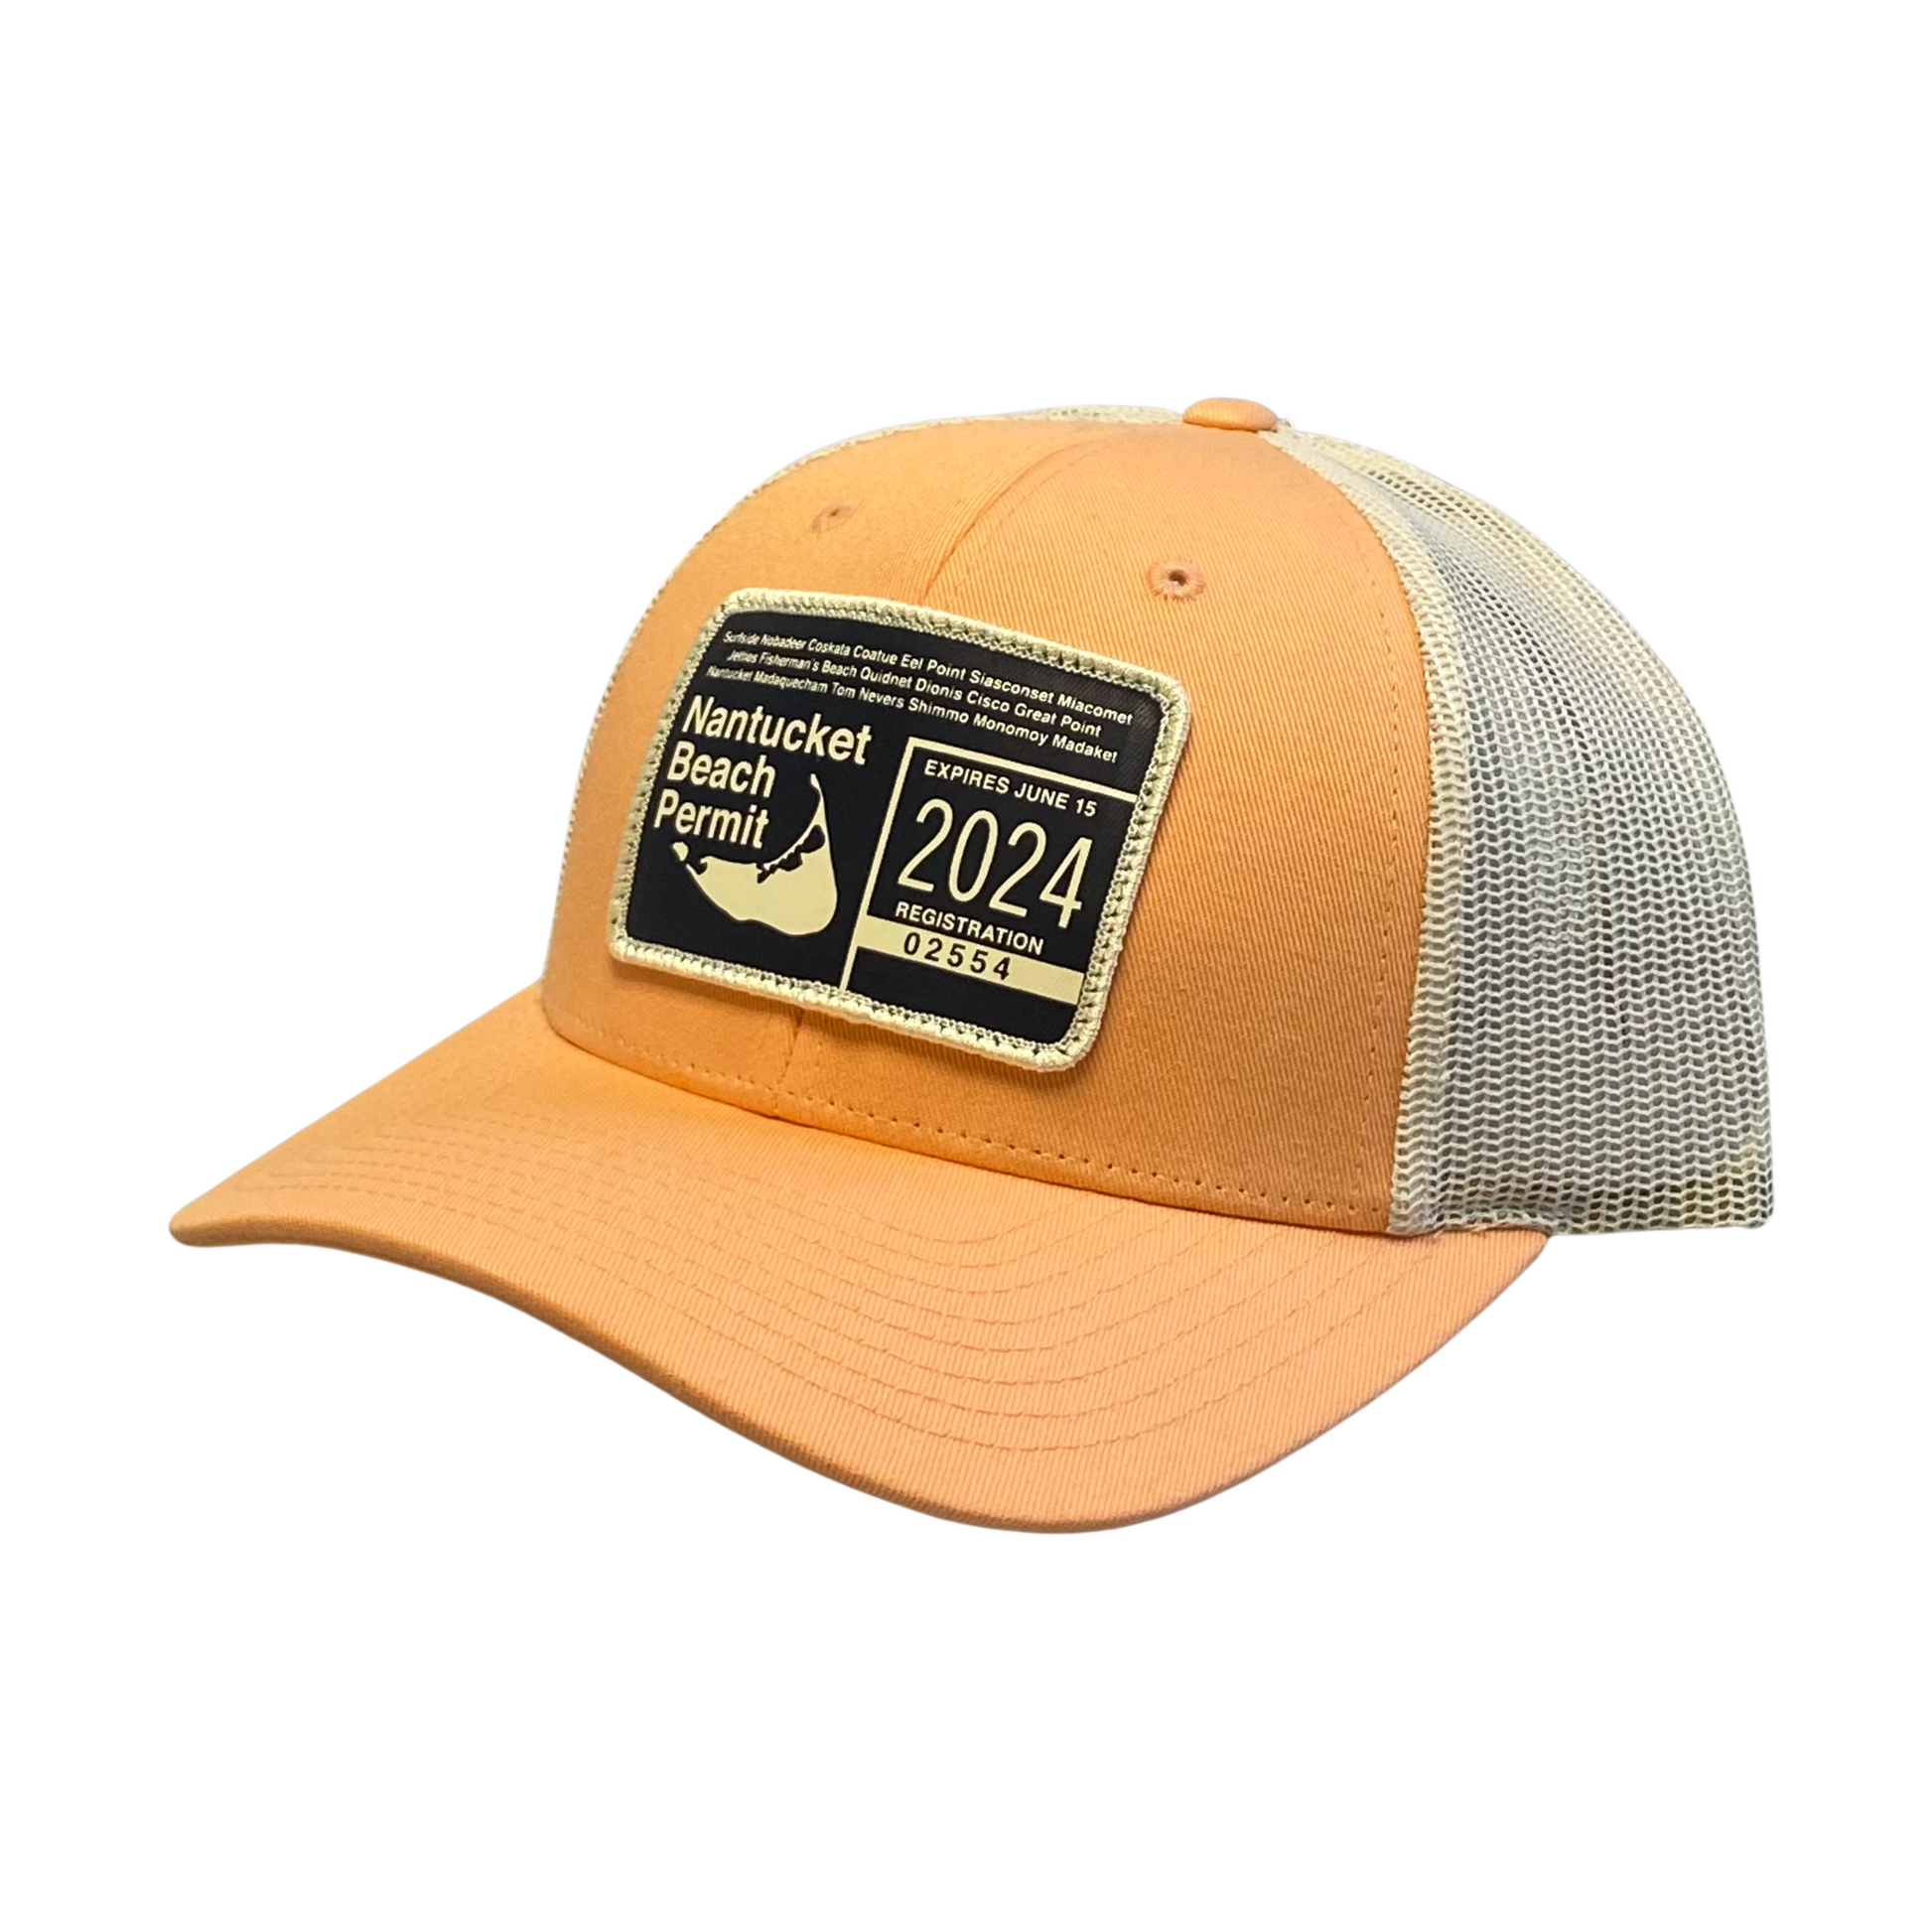 beach permit trucker cap